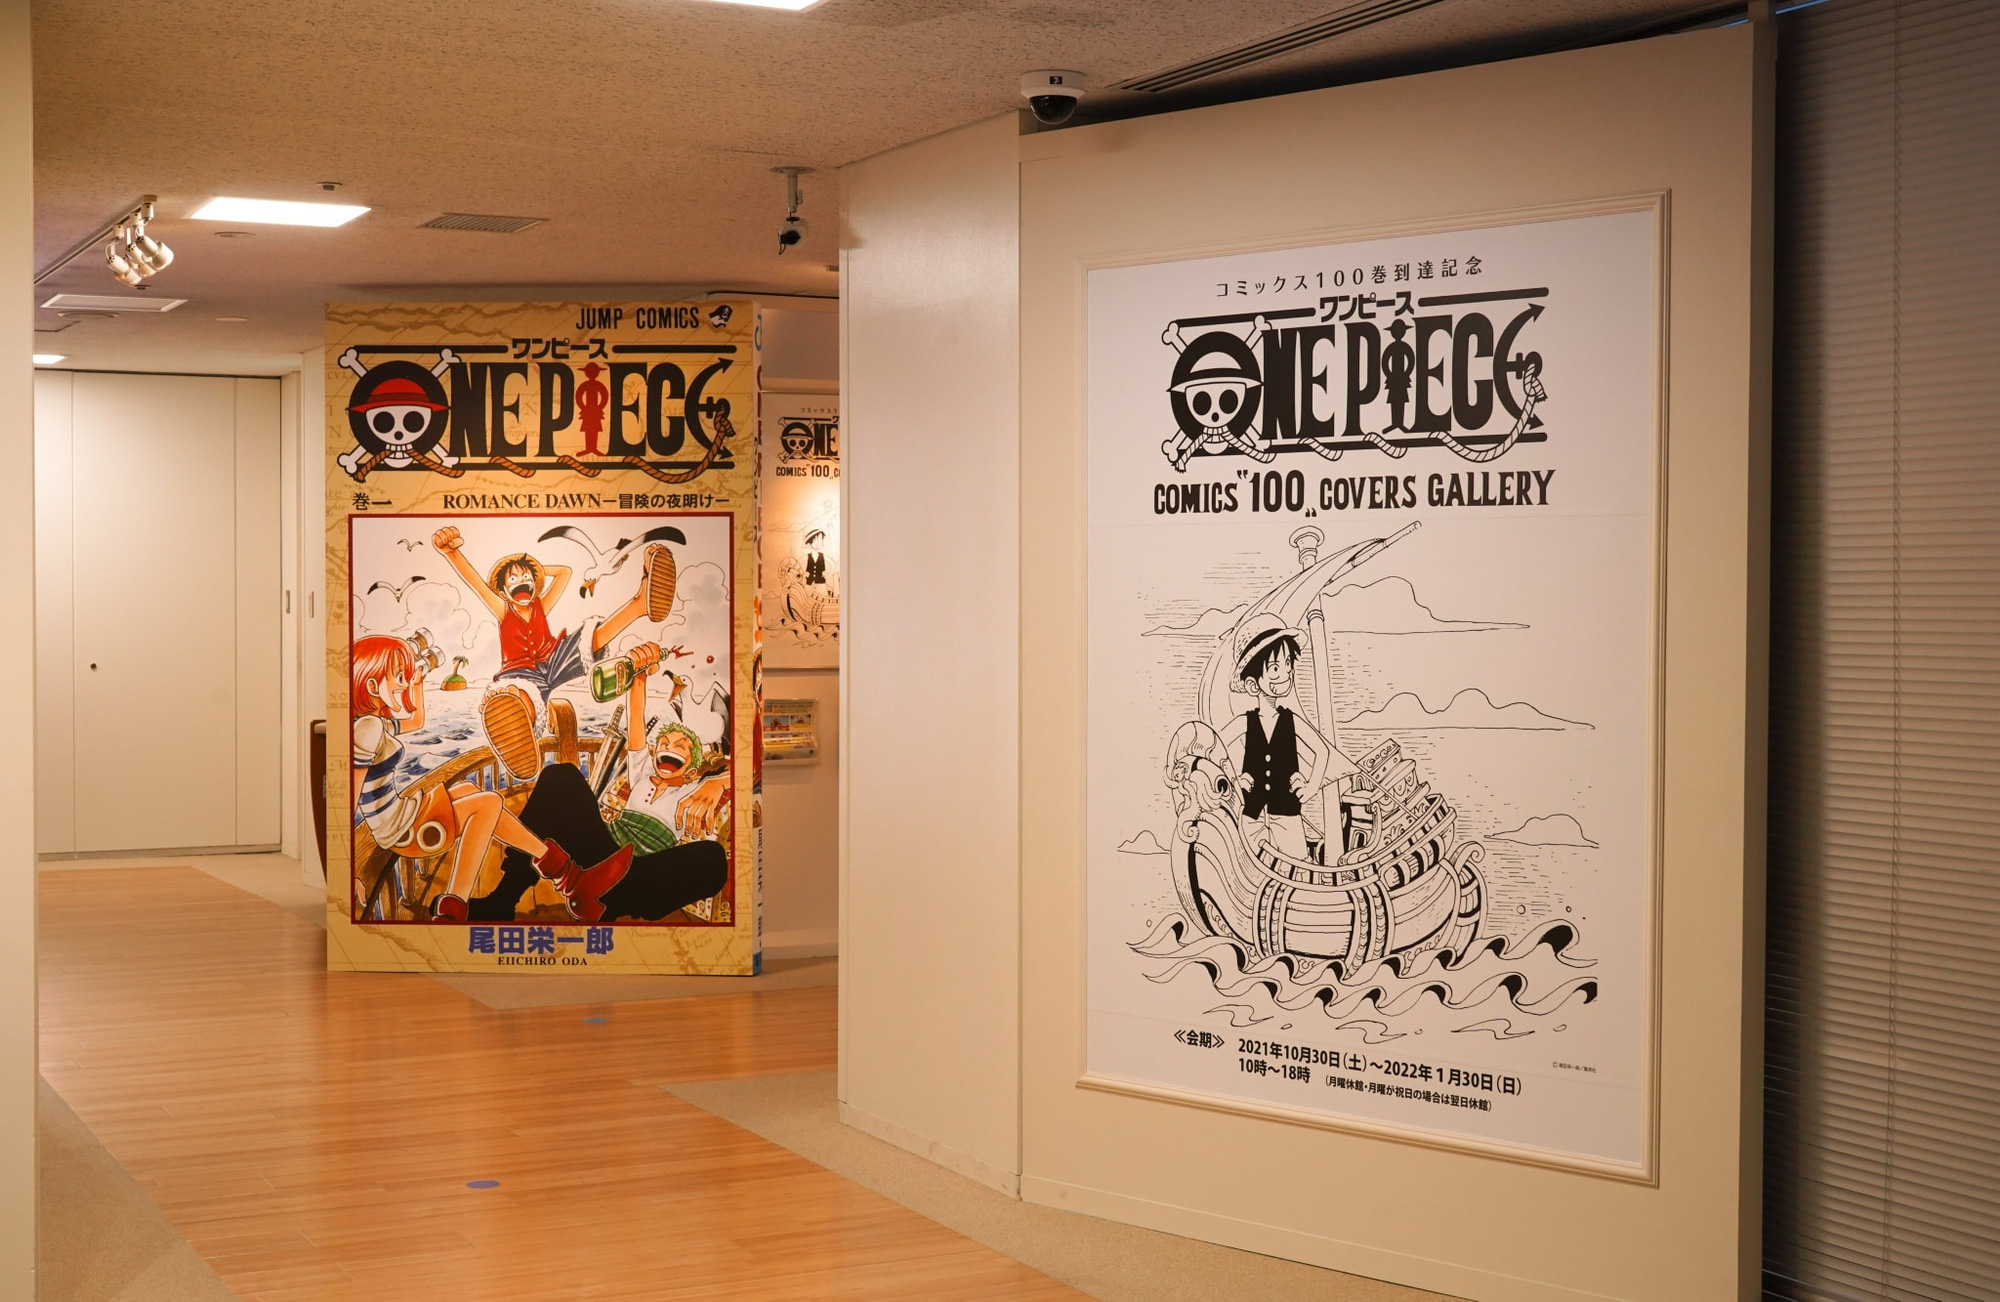 Chào mừng bộ truyện tròn 100 tập, sự kiện One Piece Comics 100 Covers Gallery hoành tráng được tổ chức - Ảnh 2.